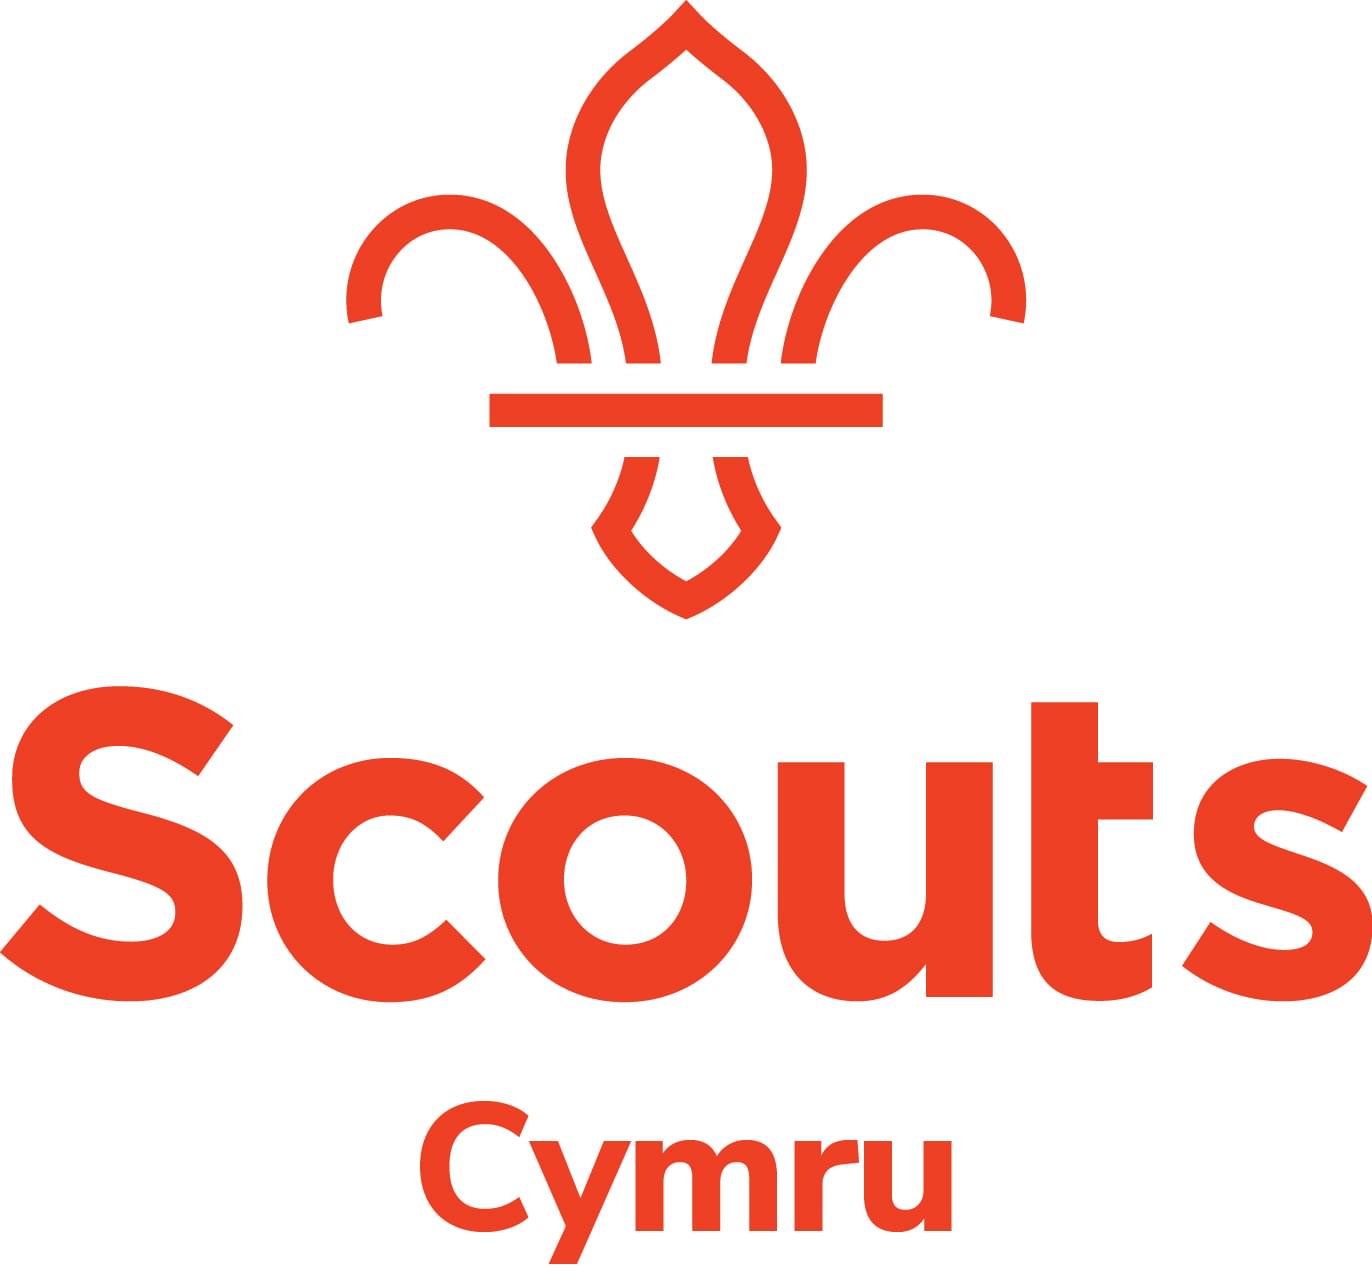 Scouts Cymru logo